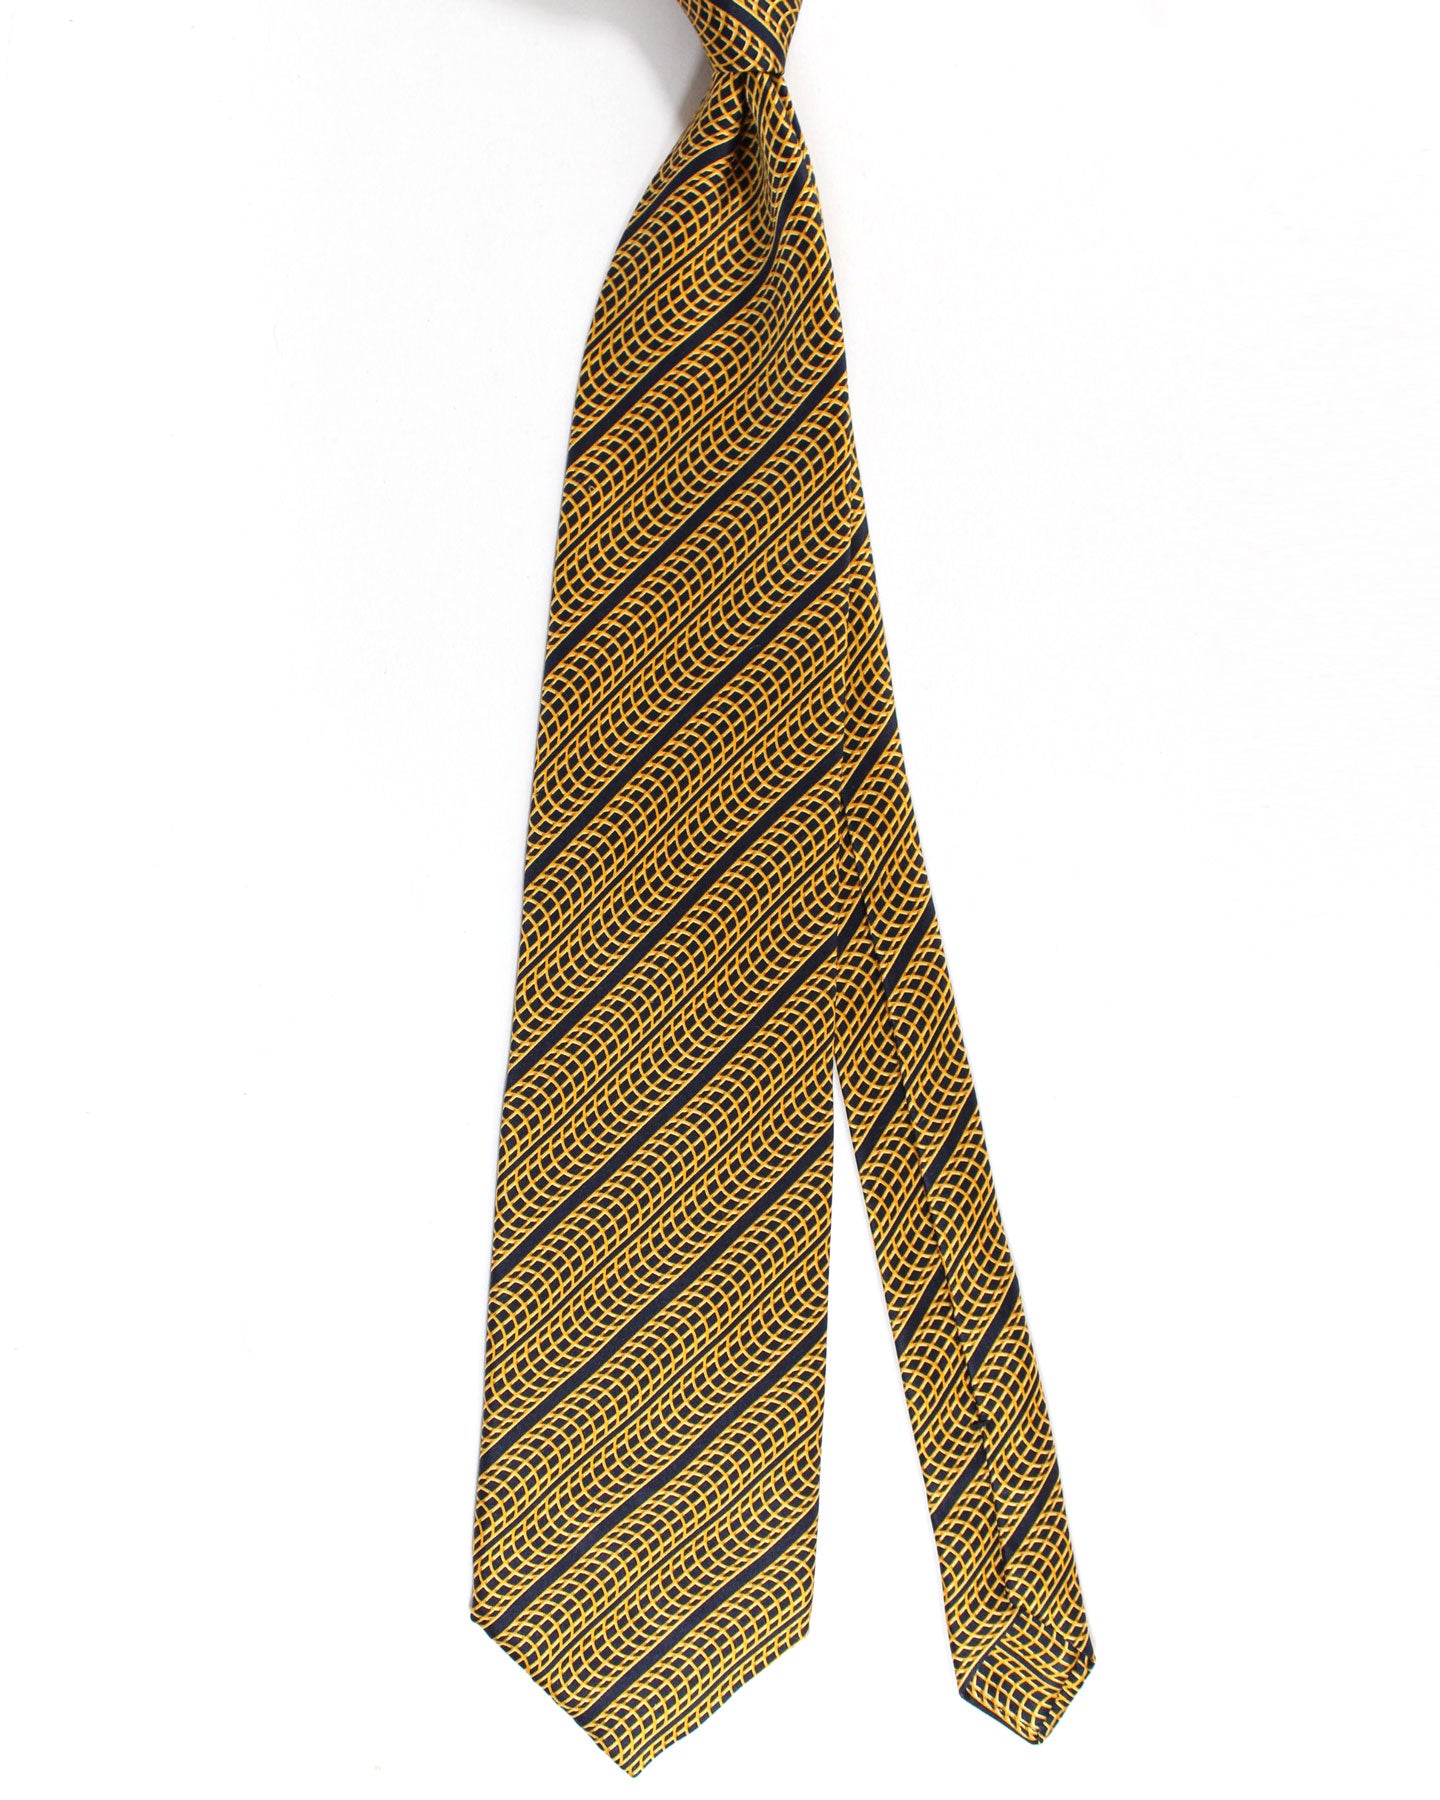 Zilli Paris Tie Black Brown Gold Stripes Design - Wide Necktie